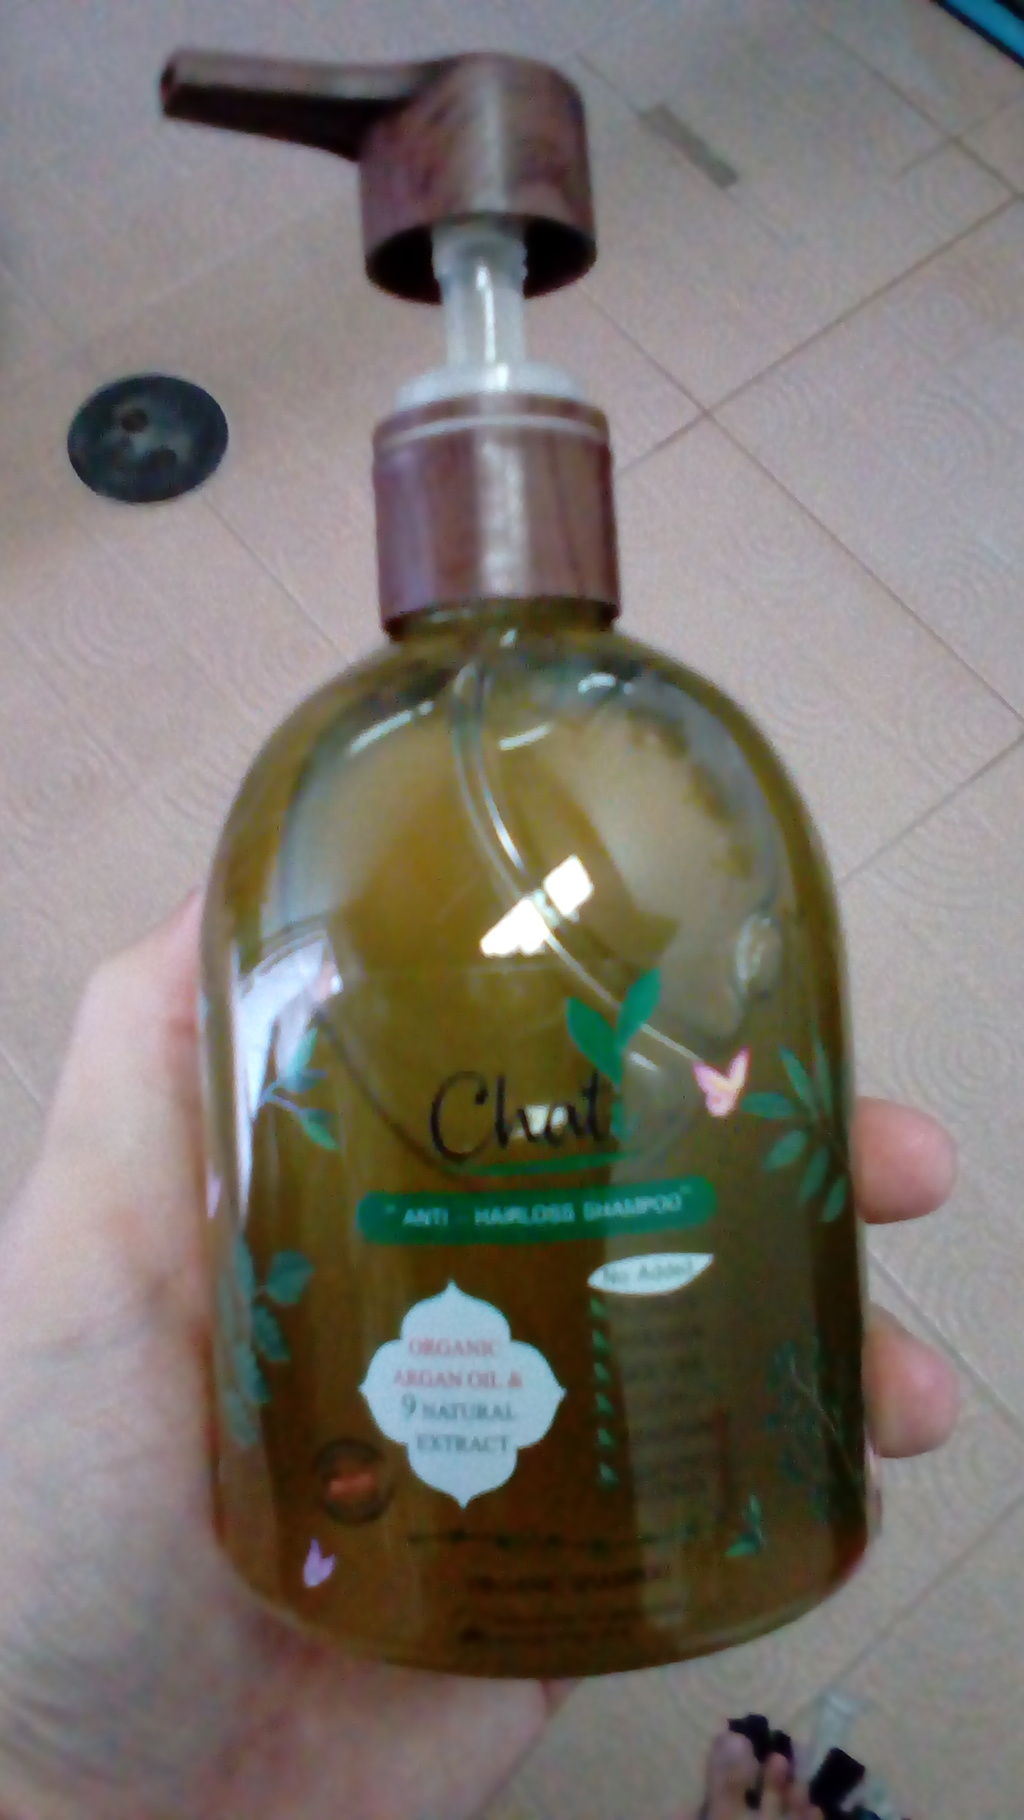 Chati Anti-Hairloss shampoo 300ml ฌาฏิแชมพู ลดผมขาดหลุดร่วง รีวิว